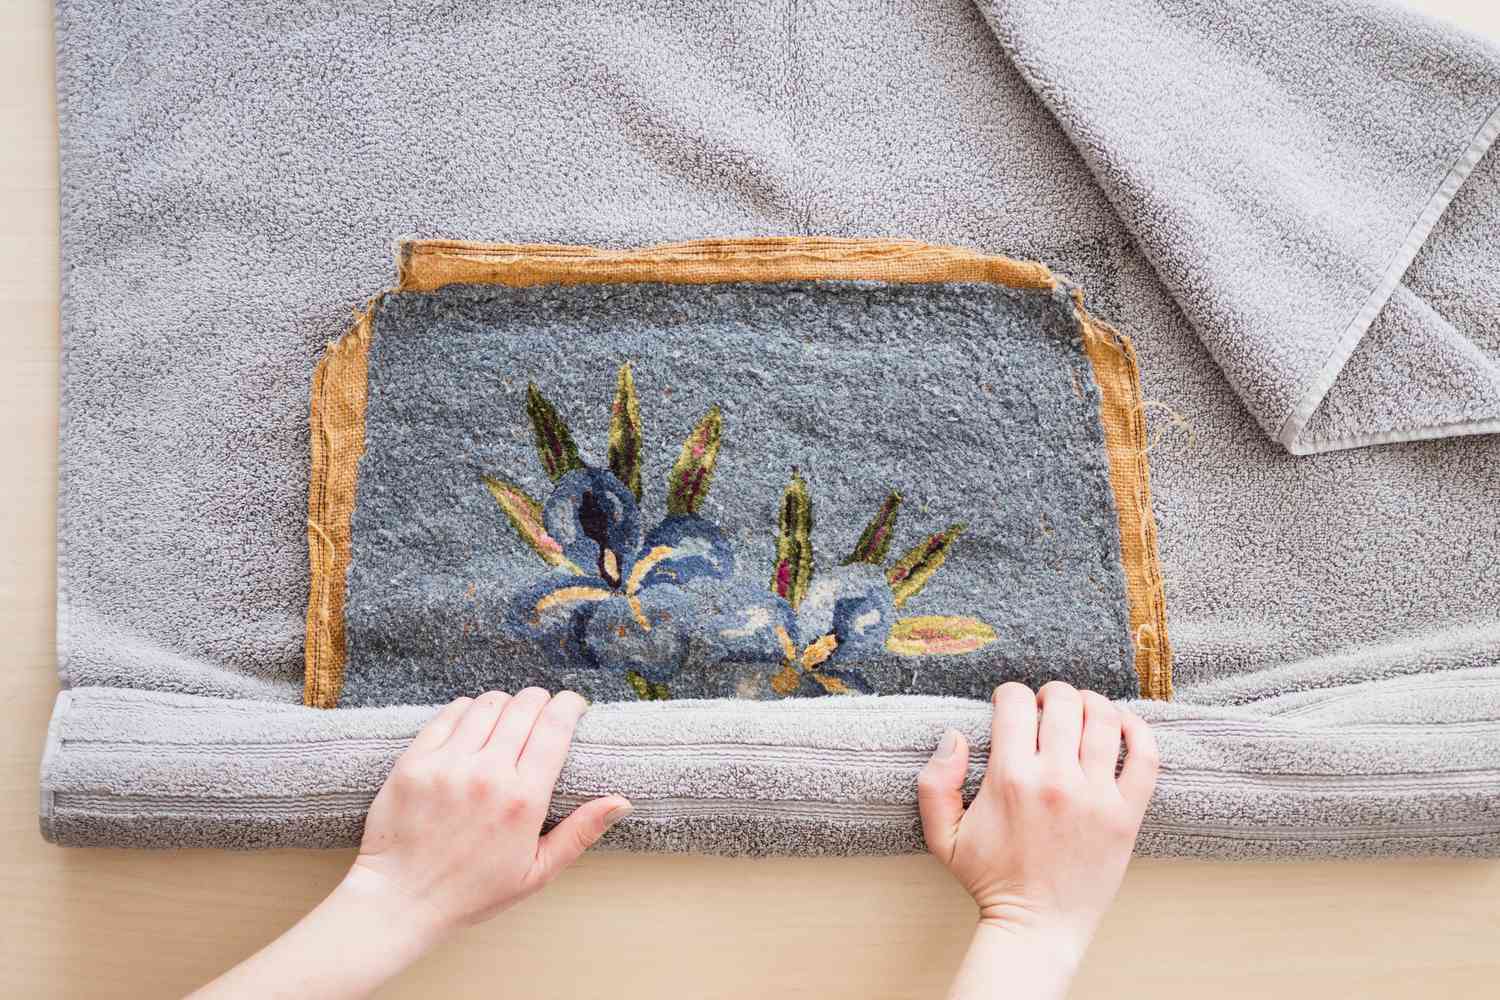 Peça de arte em ponto de agulha enrolada em uma toalha cinza para secar